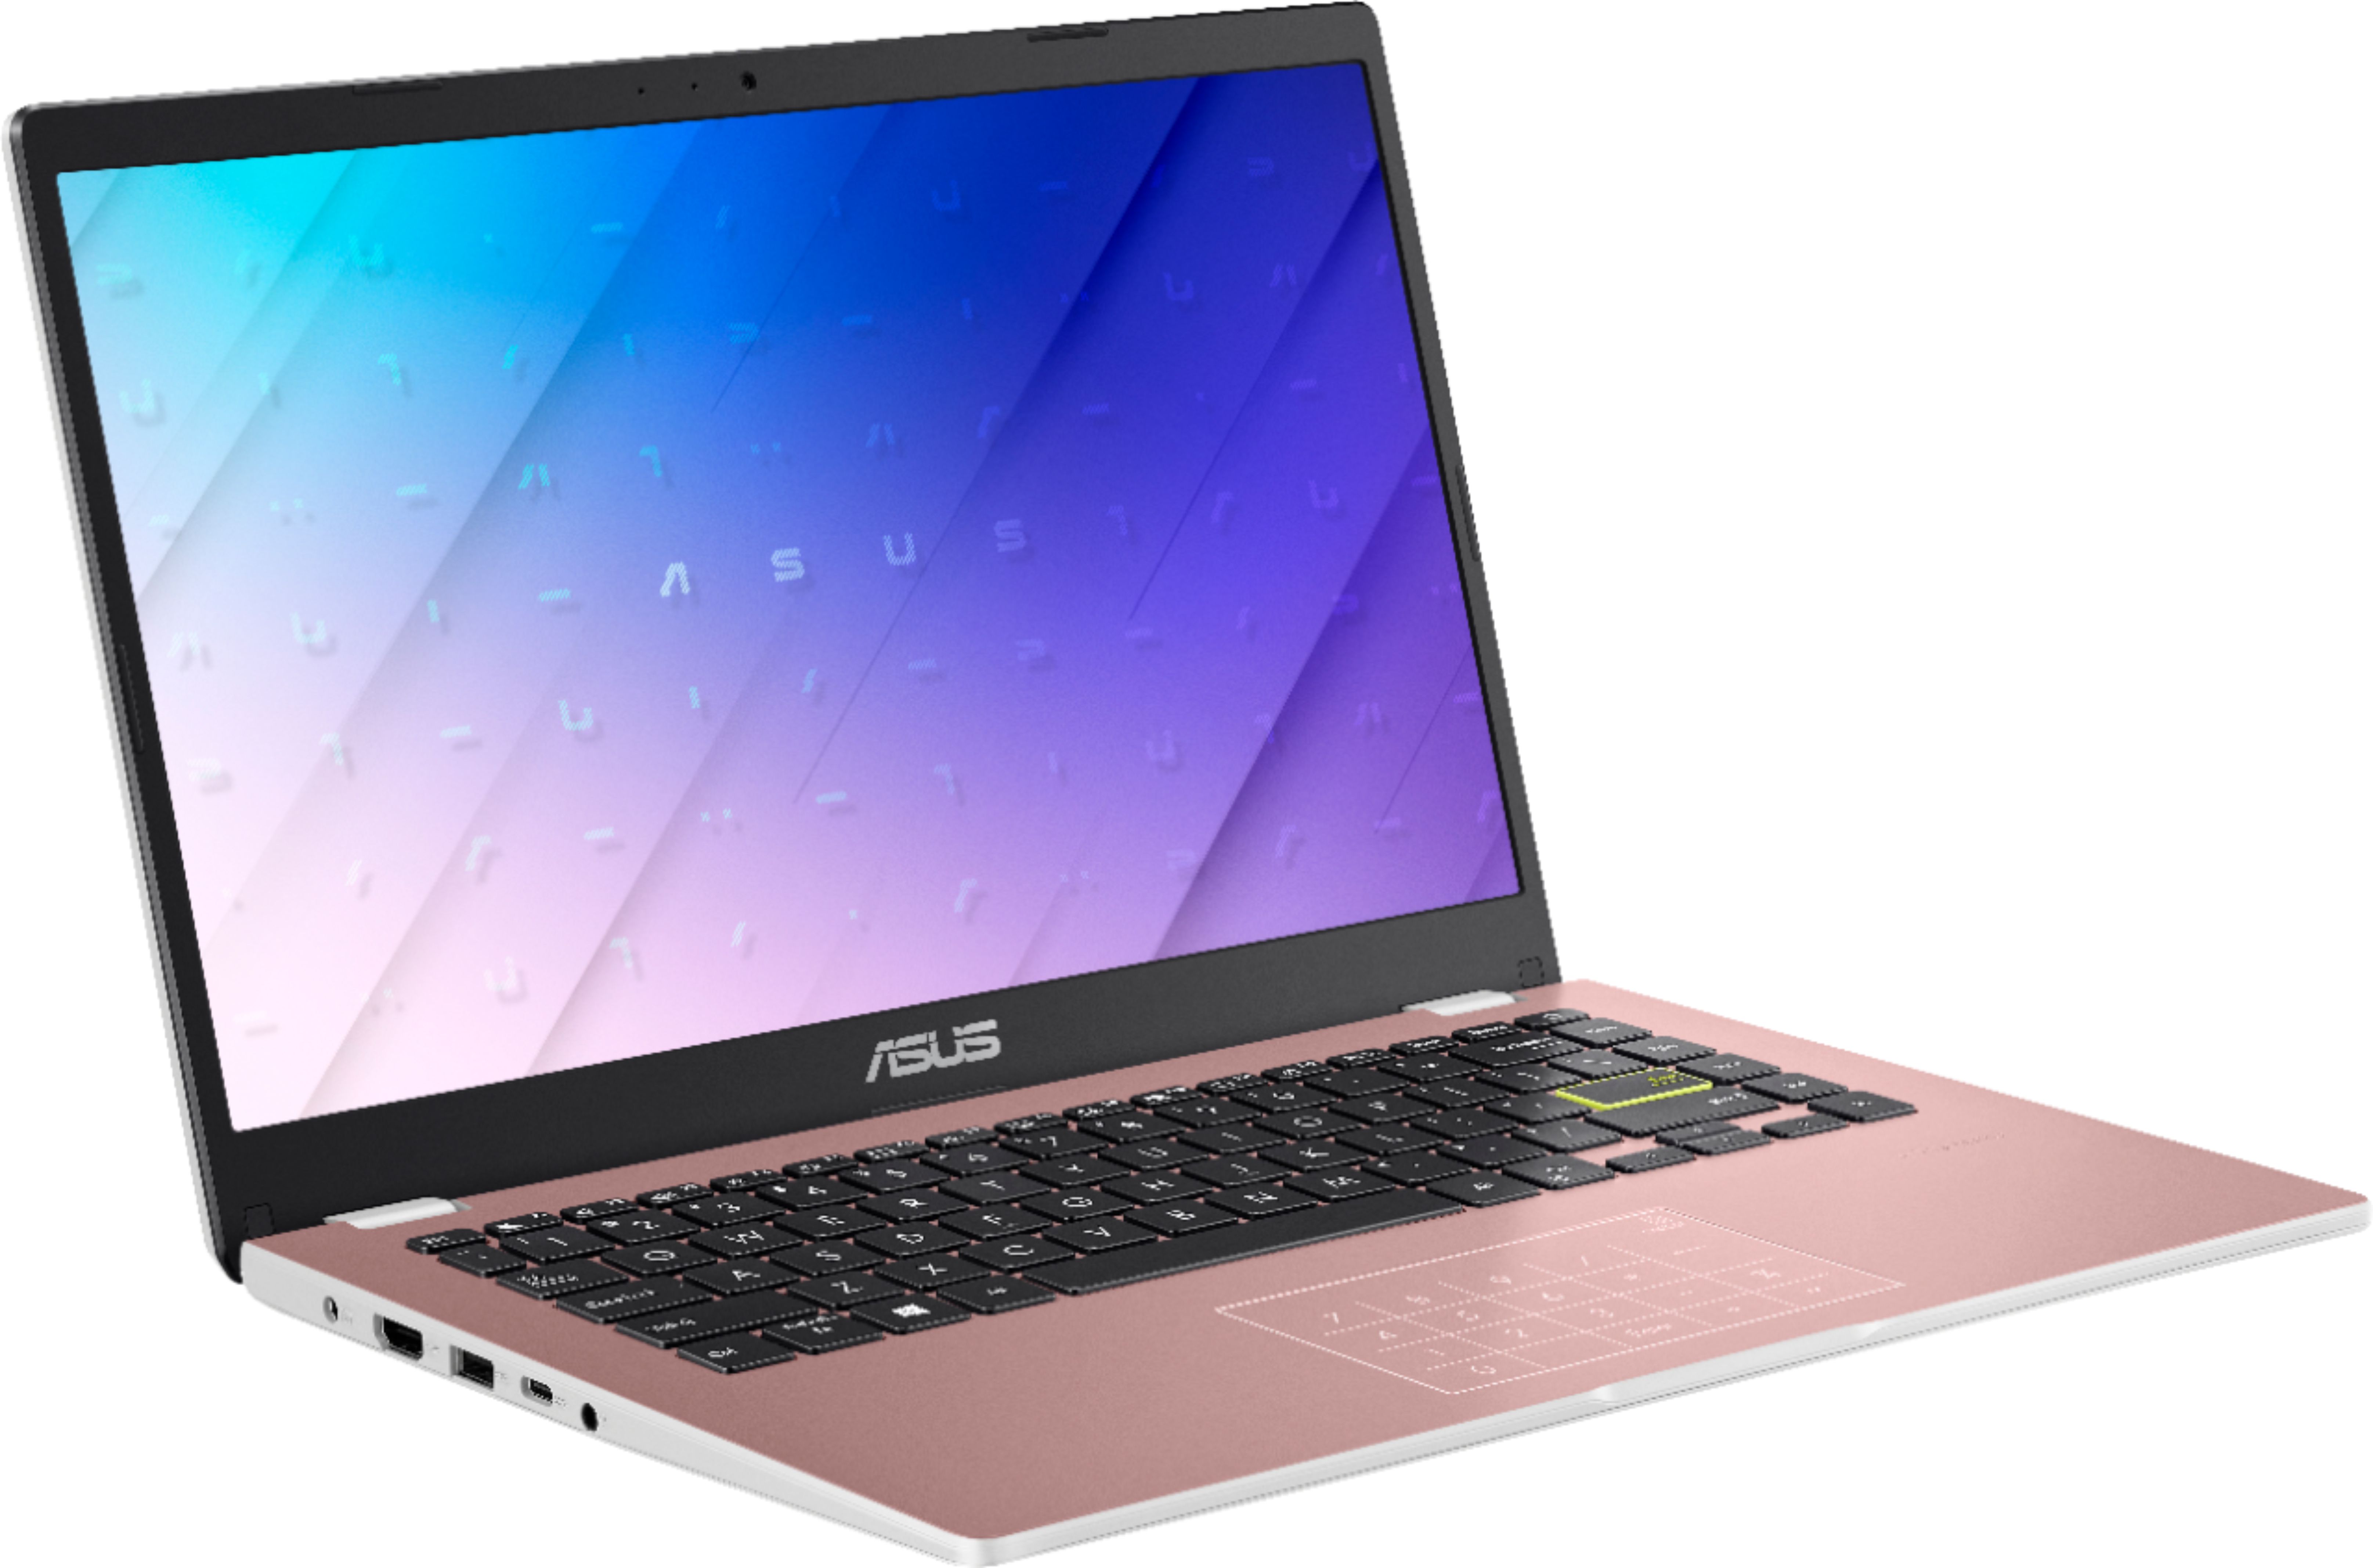 Asus 14.0 Laptop - Intel Celeron N4020 - 4gb Memory - 128gb Emmc - Pink